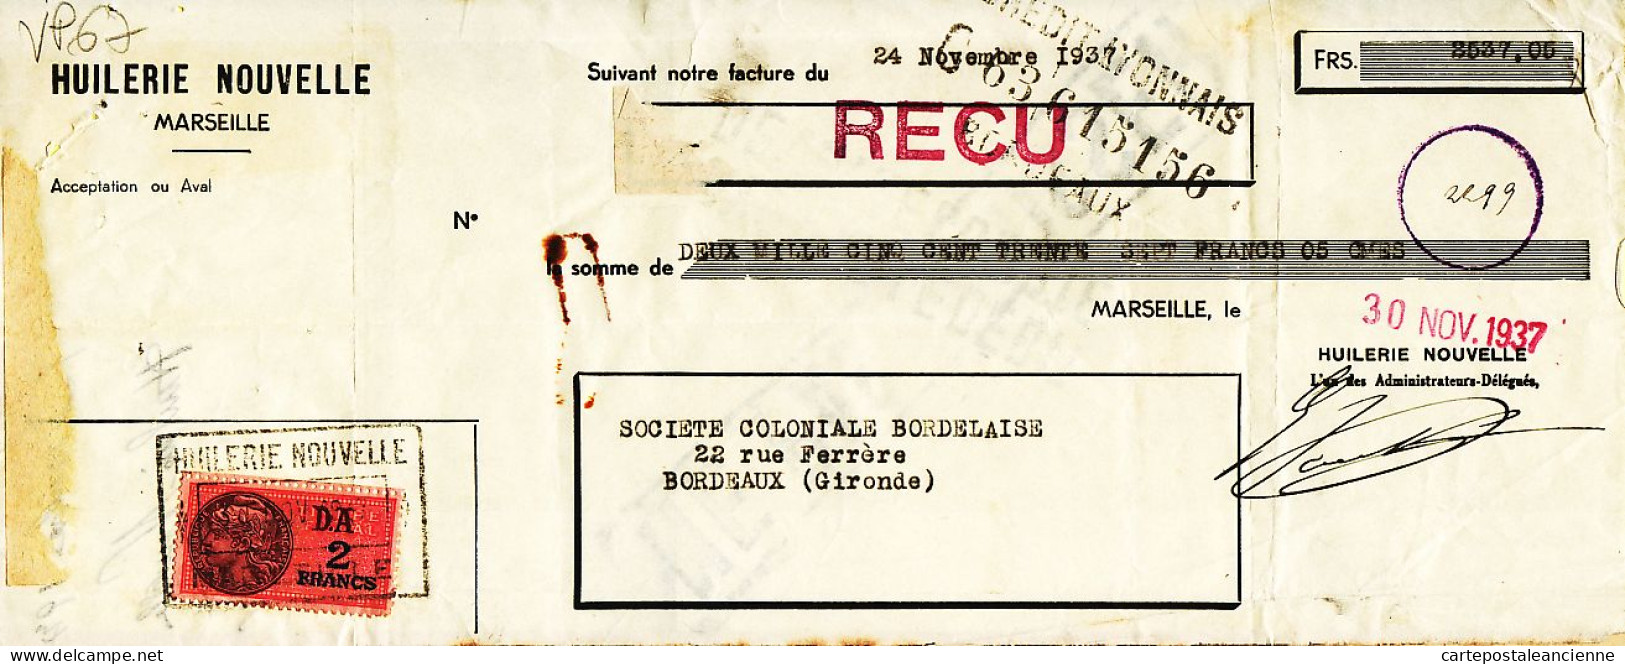 31276 / MARSEILLE Huilerie Nouvelle Lettre De Change 24.11.1937 à BESSE Coloniale Bordelaise Gironde Timbre Fiscal - Letras De Cambio